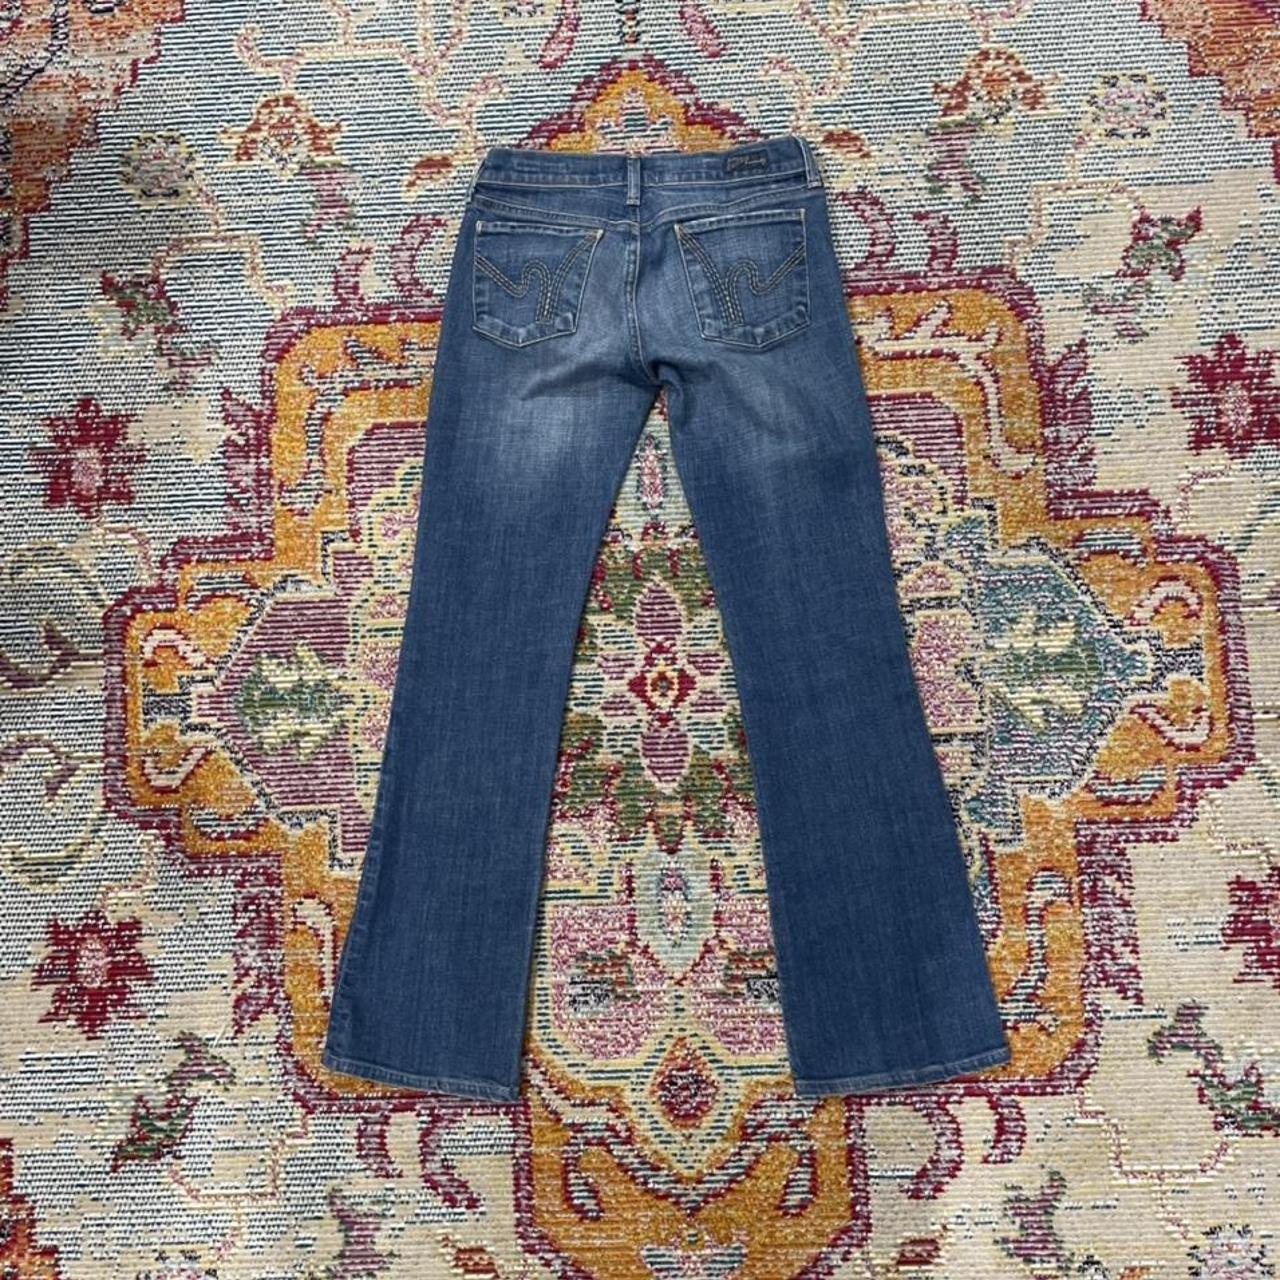 Nordstrom Women's Blue Jeans | Depop